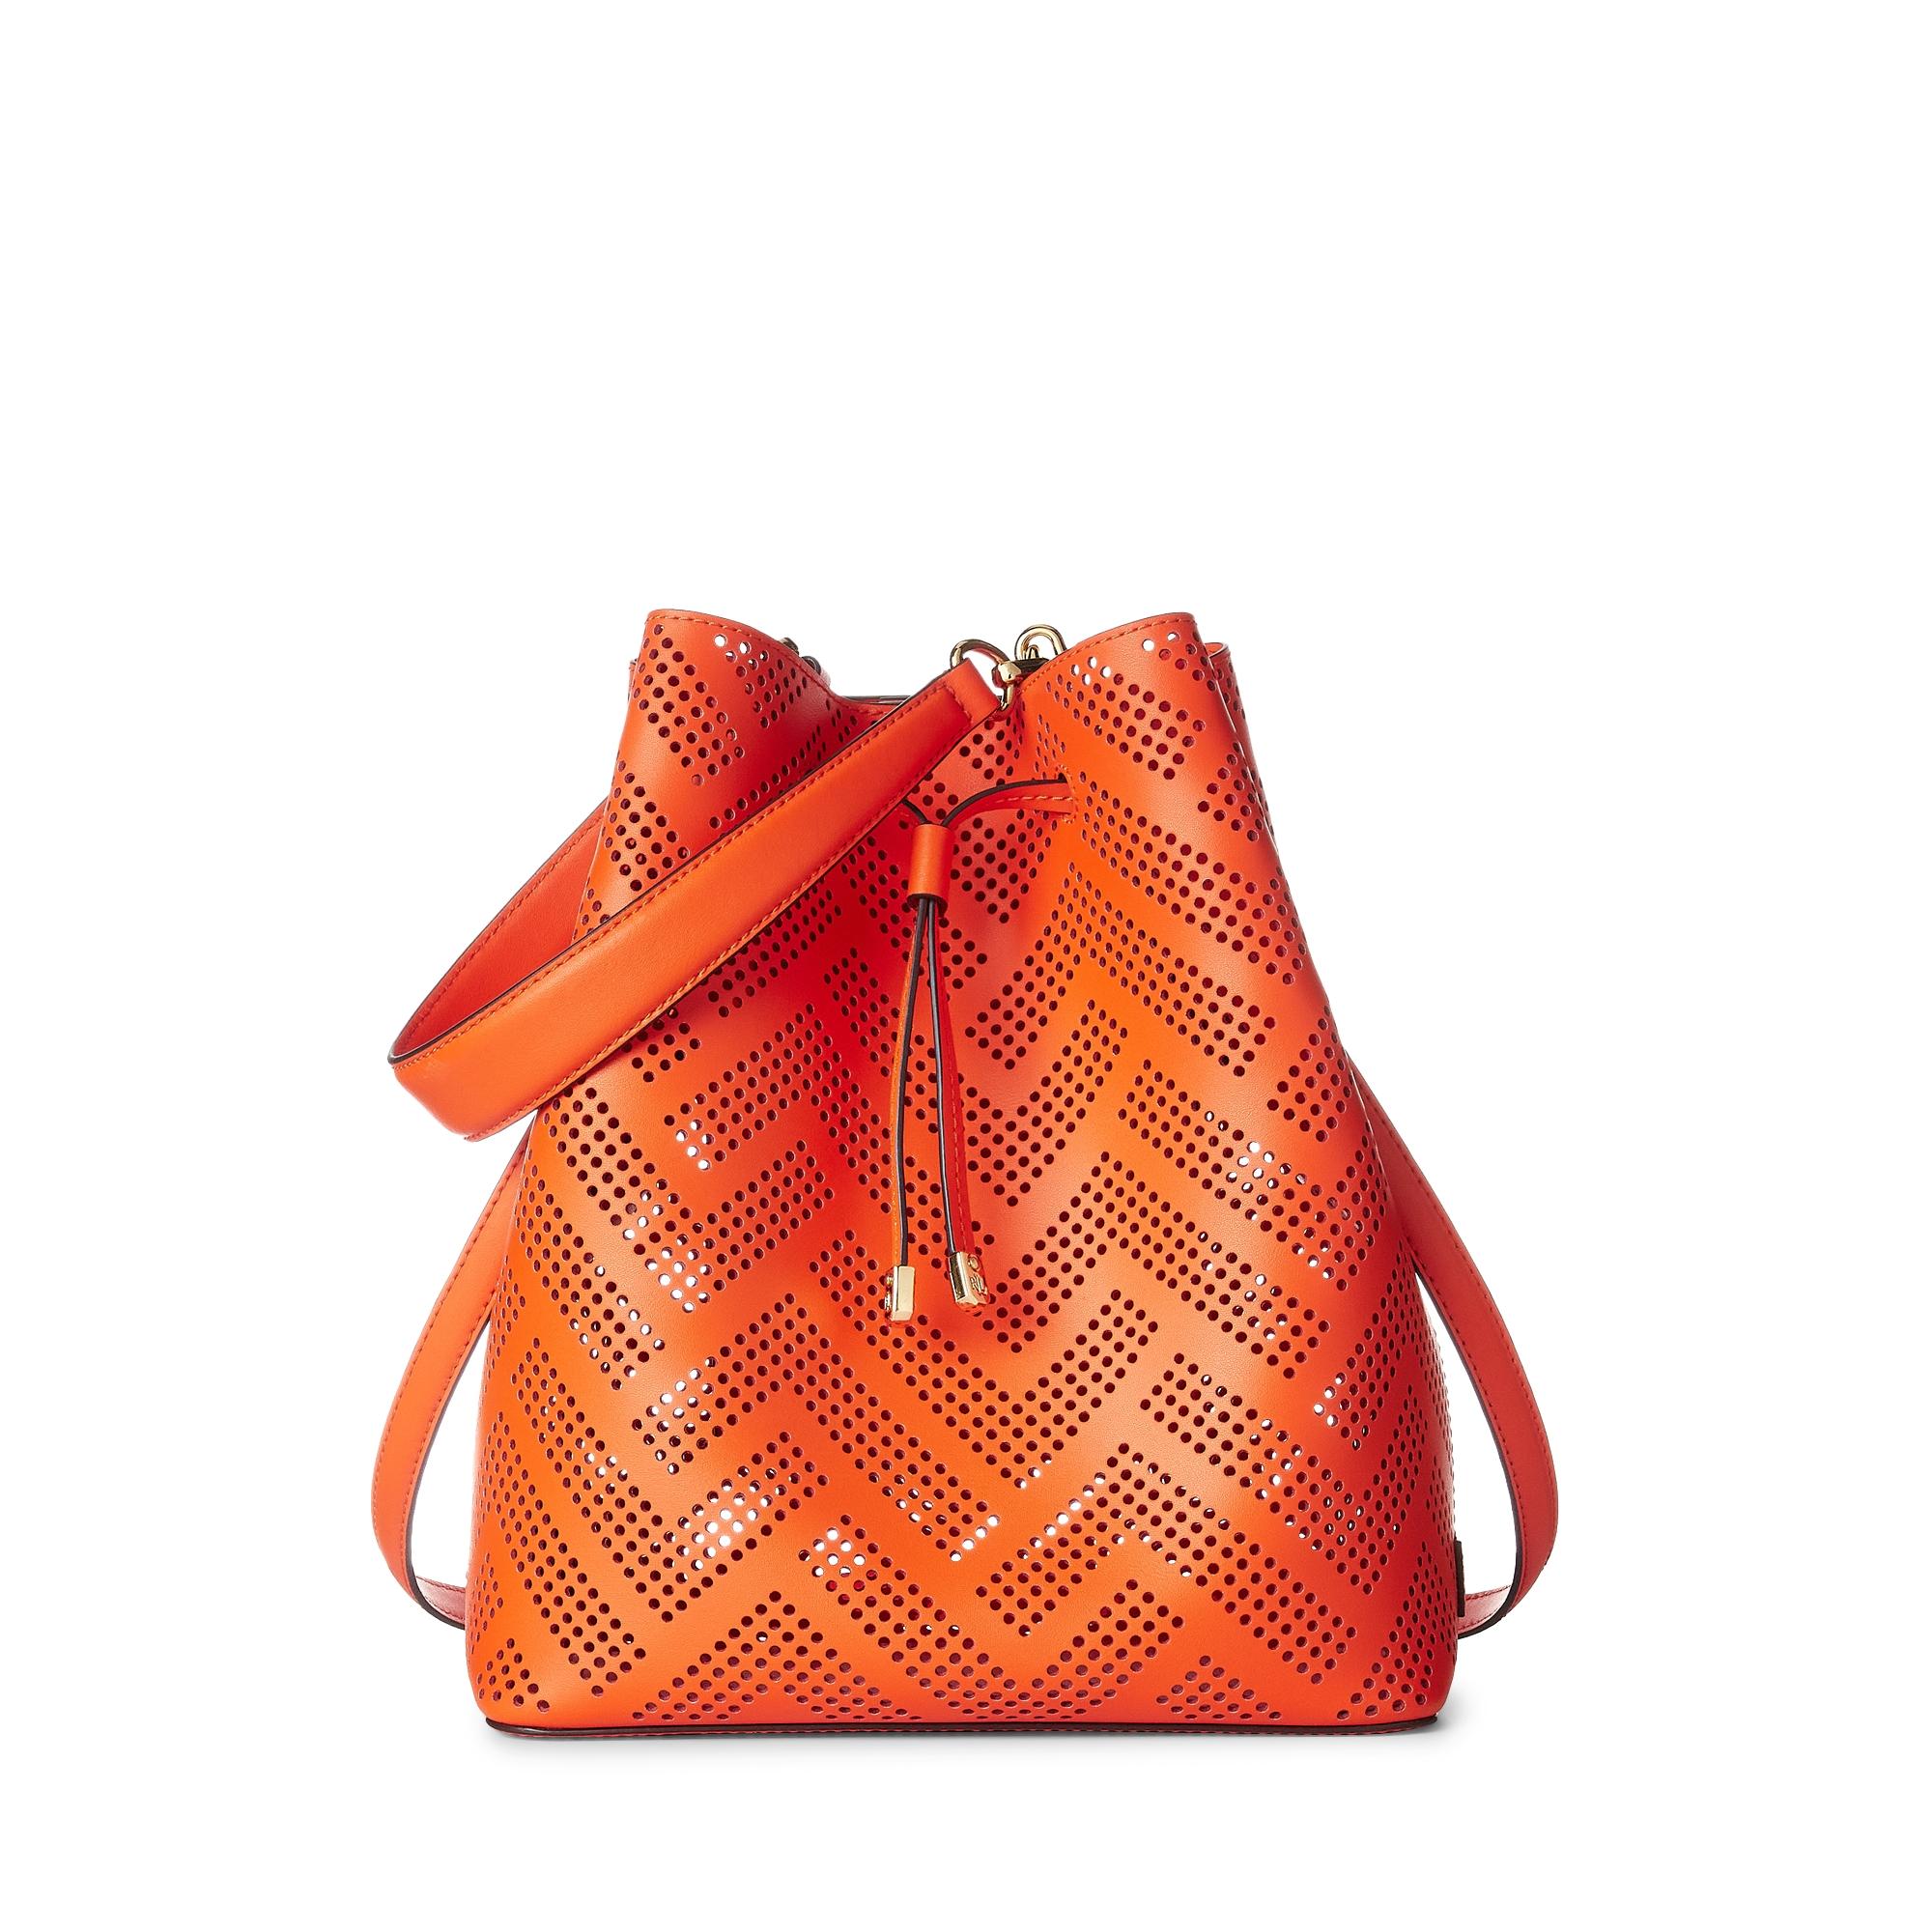 Lauren by Ralph Lauren Ralph Lauren Perforated Leather Debby Drawstring Bag  in Orange | Lyst